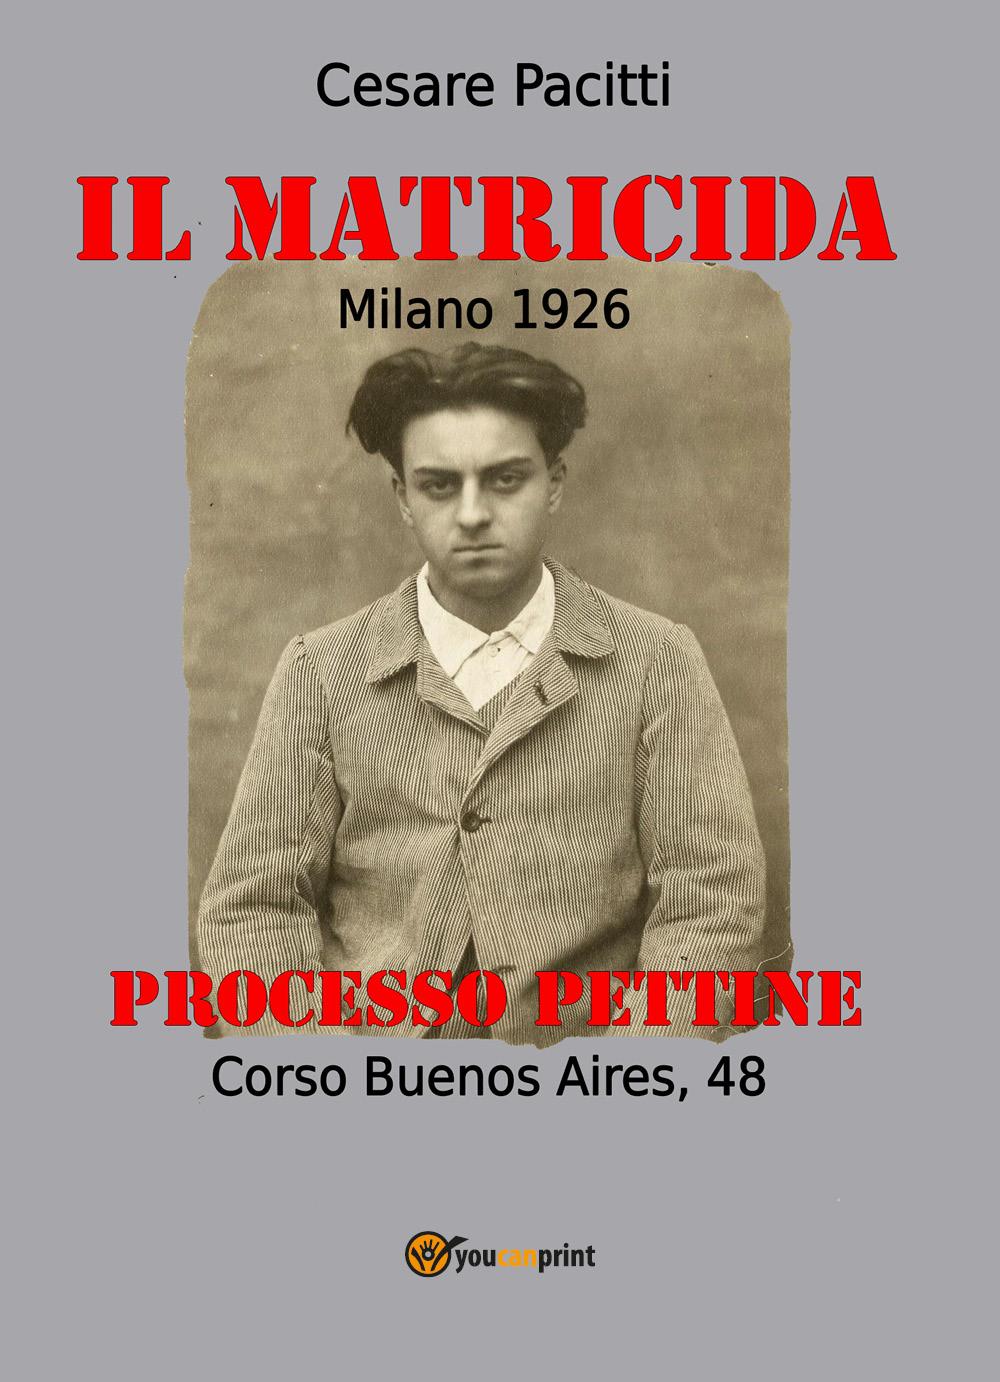 Il matricida - Milano Corso Buenos Aires, 48 -1926. Il Processo Pettine